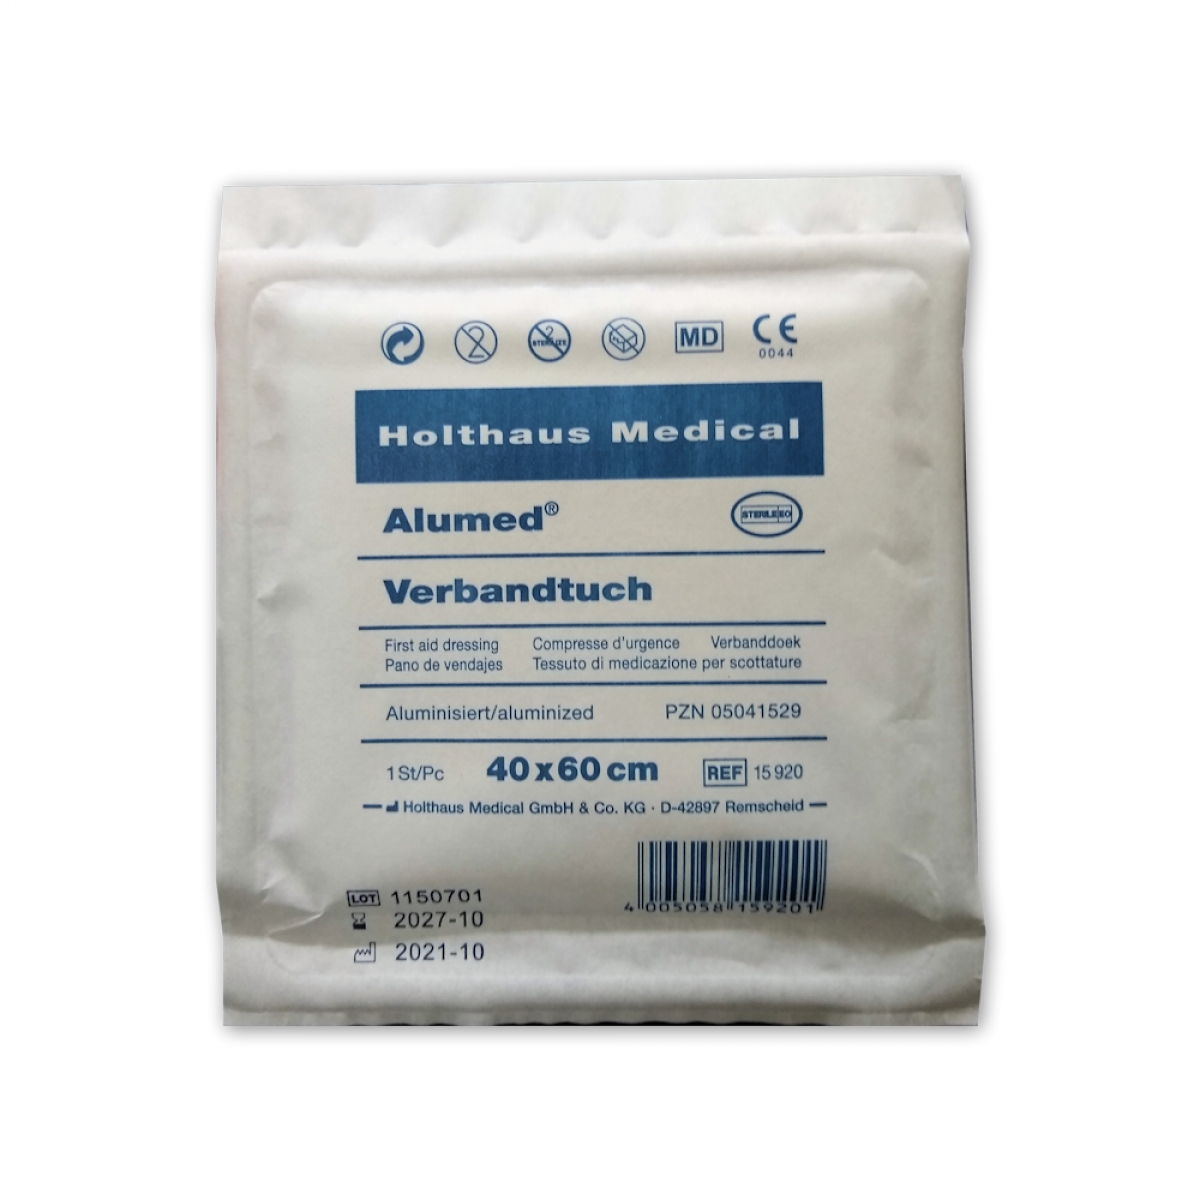 Holthaus Medical, Erste-Hilfe, Alumed Verbandtuch, 60 x 80cm